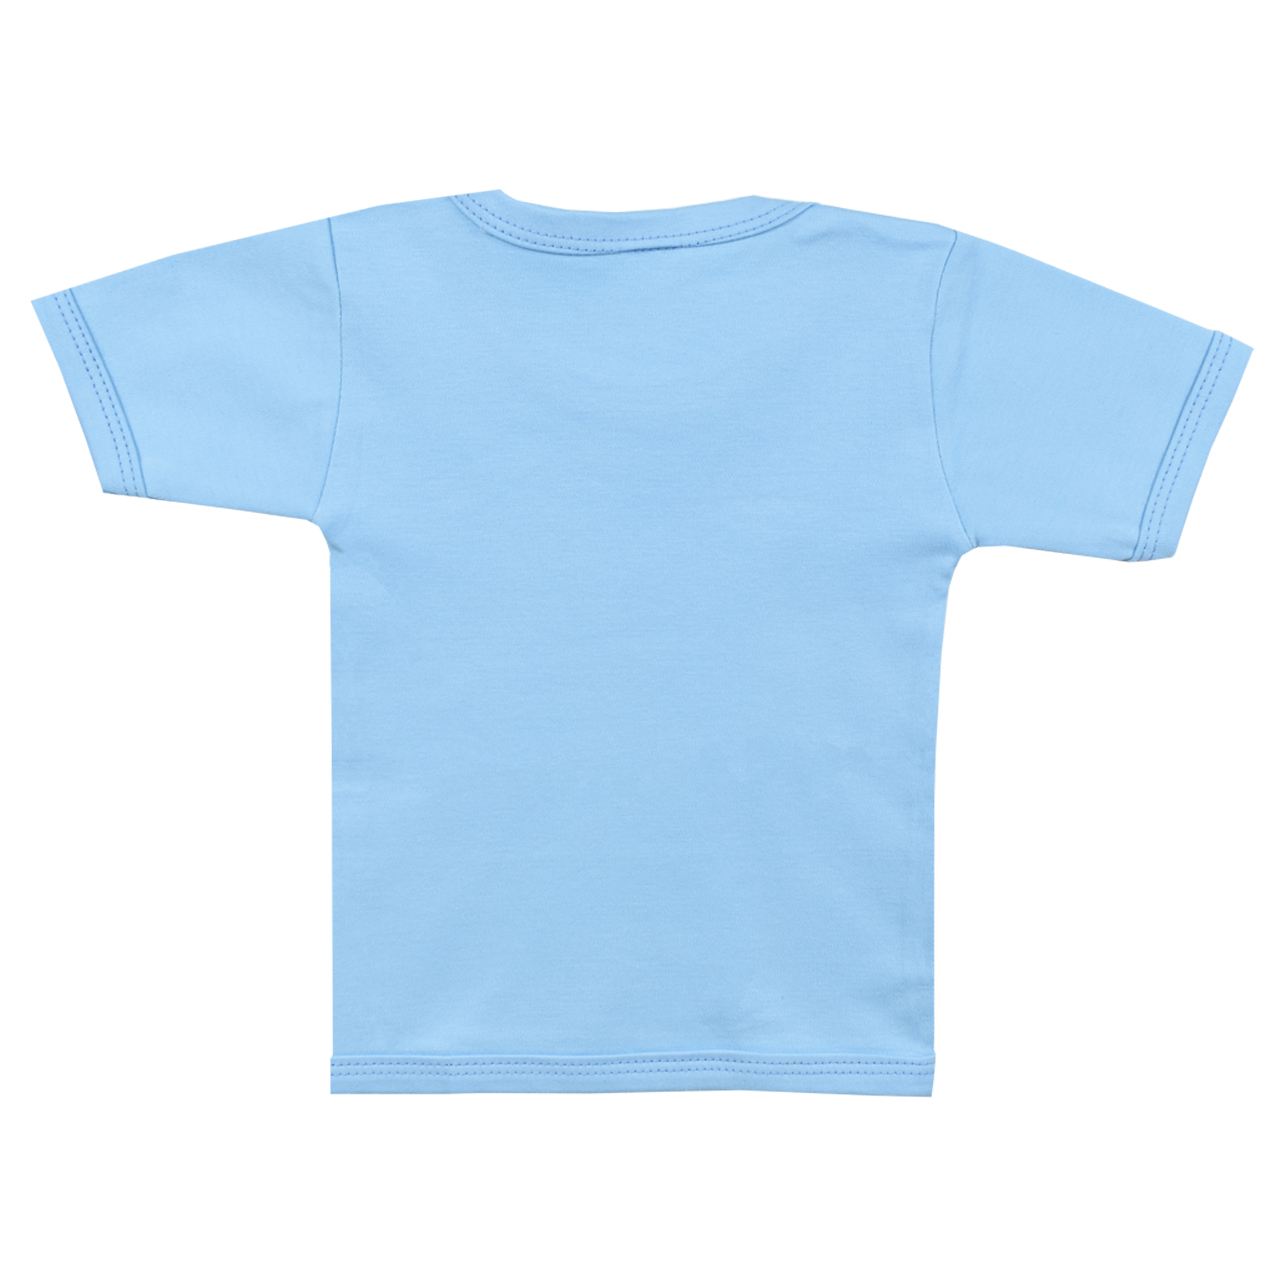 تی شرت آستین کوتاه نوزادی اسپیکو کد 301 -5 بسته دو عددی -  - 5